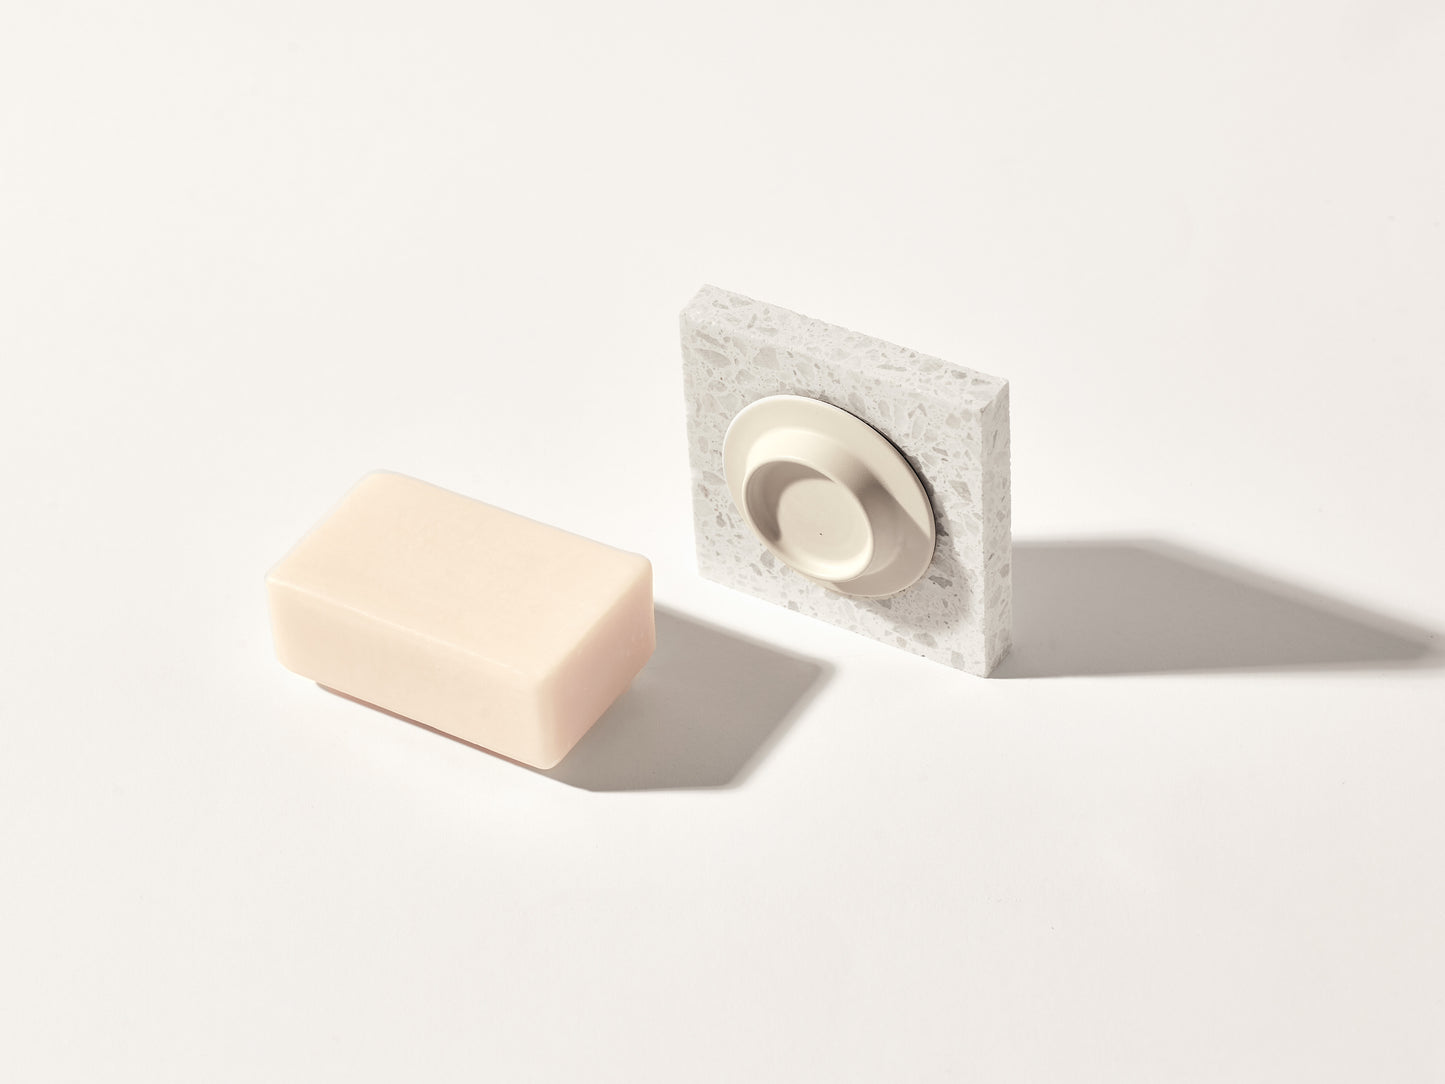 Soapi Off-white - magnetic soap holder